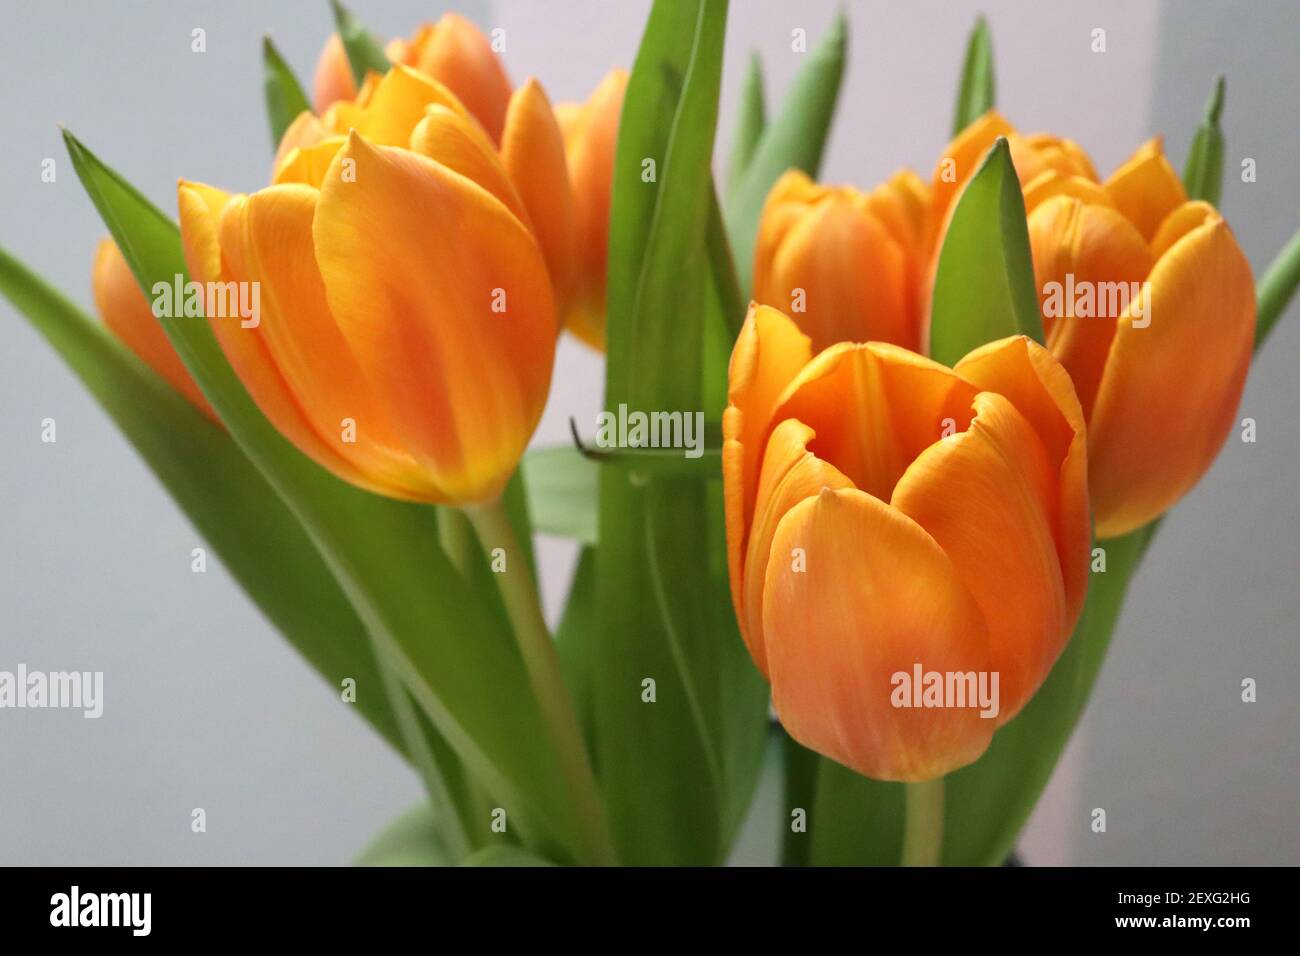 Tulipa arancio dal supermercato tulipani arancioni – tulipani giallo arancio profondo, marzo, Inghilterra, Regno Unito Foto Stock